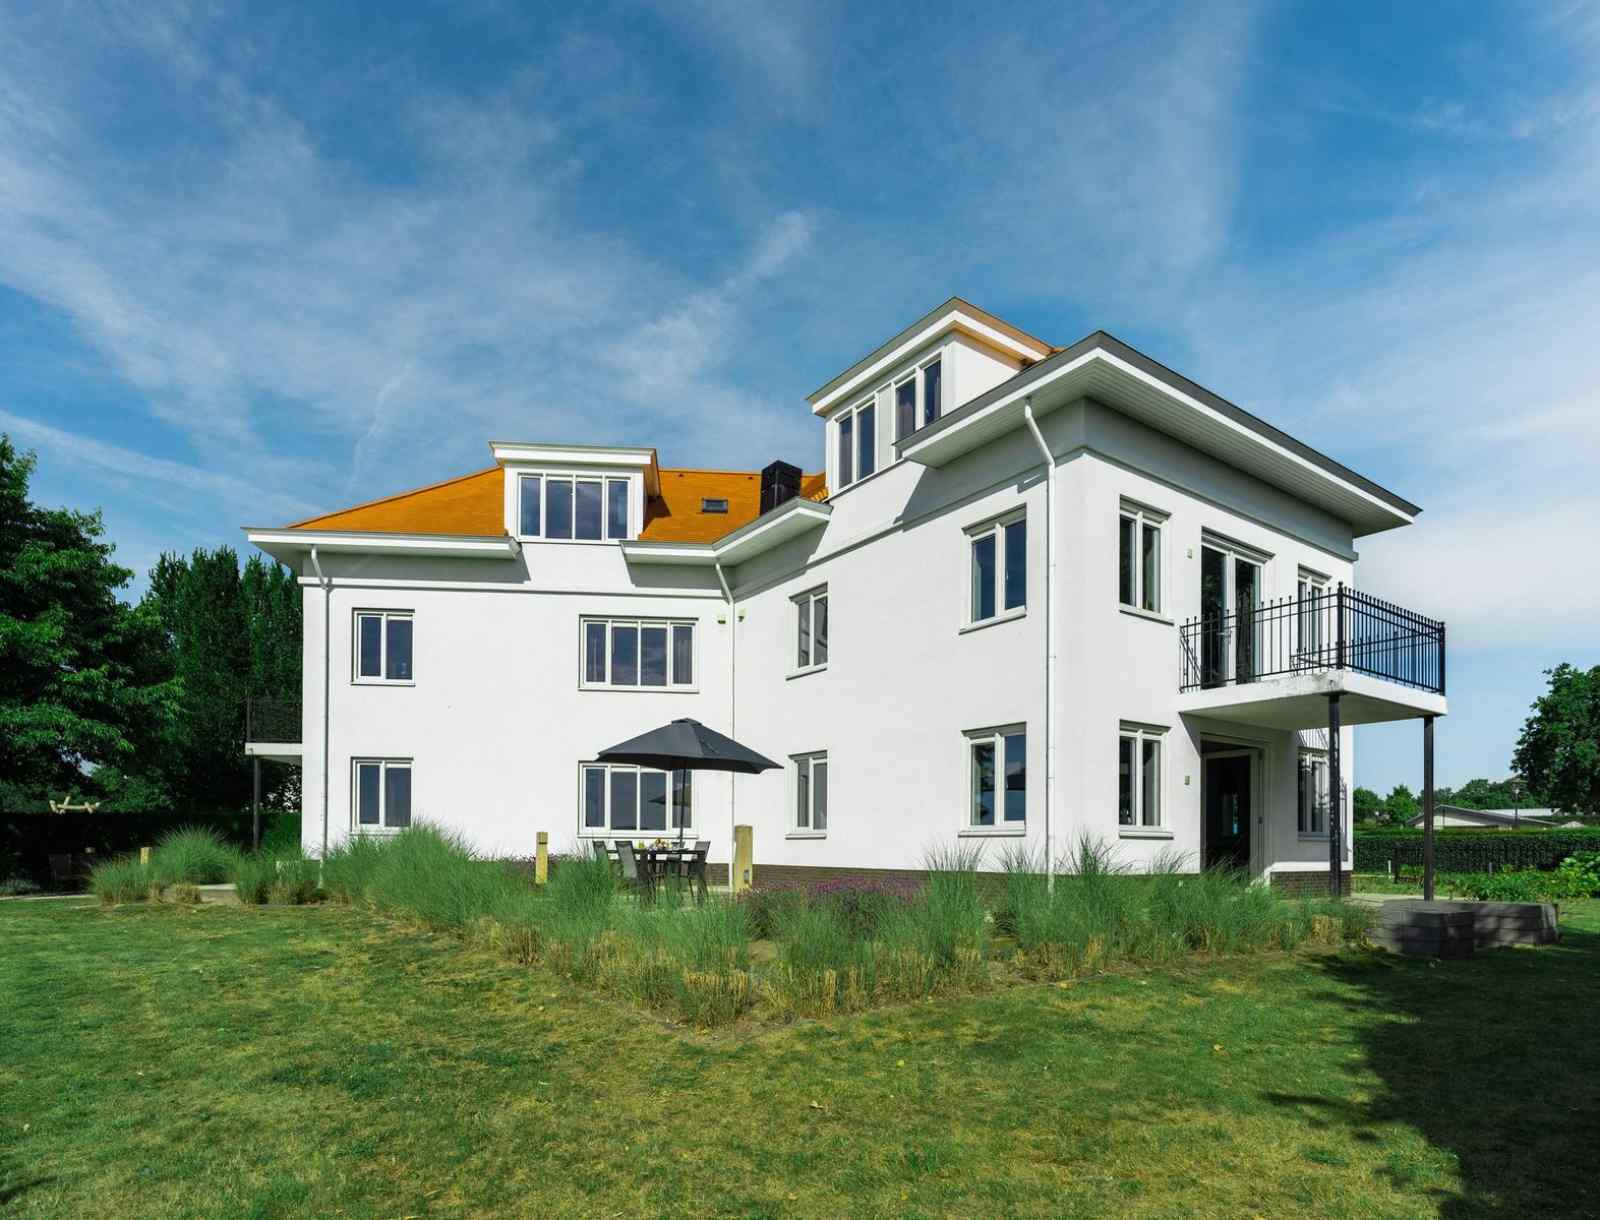 Luxe ingericht appartement voor 4 personen op vakantiepark Noordwijkse Duinen dichtbij zee - Nederland - Europa - Noordwijk